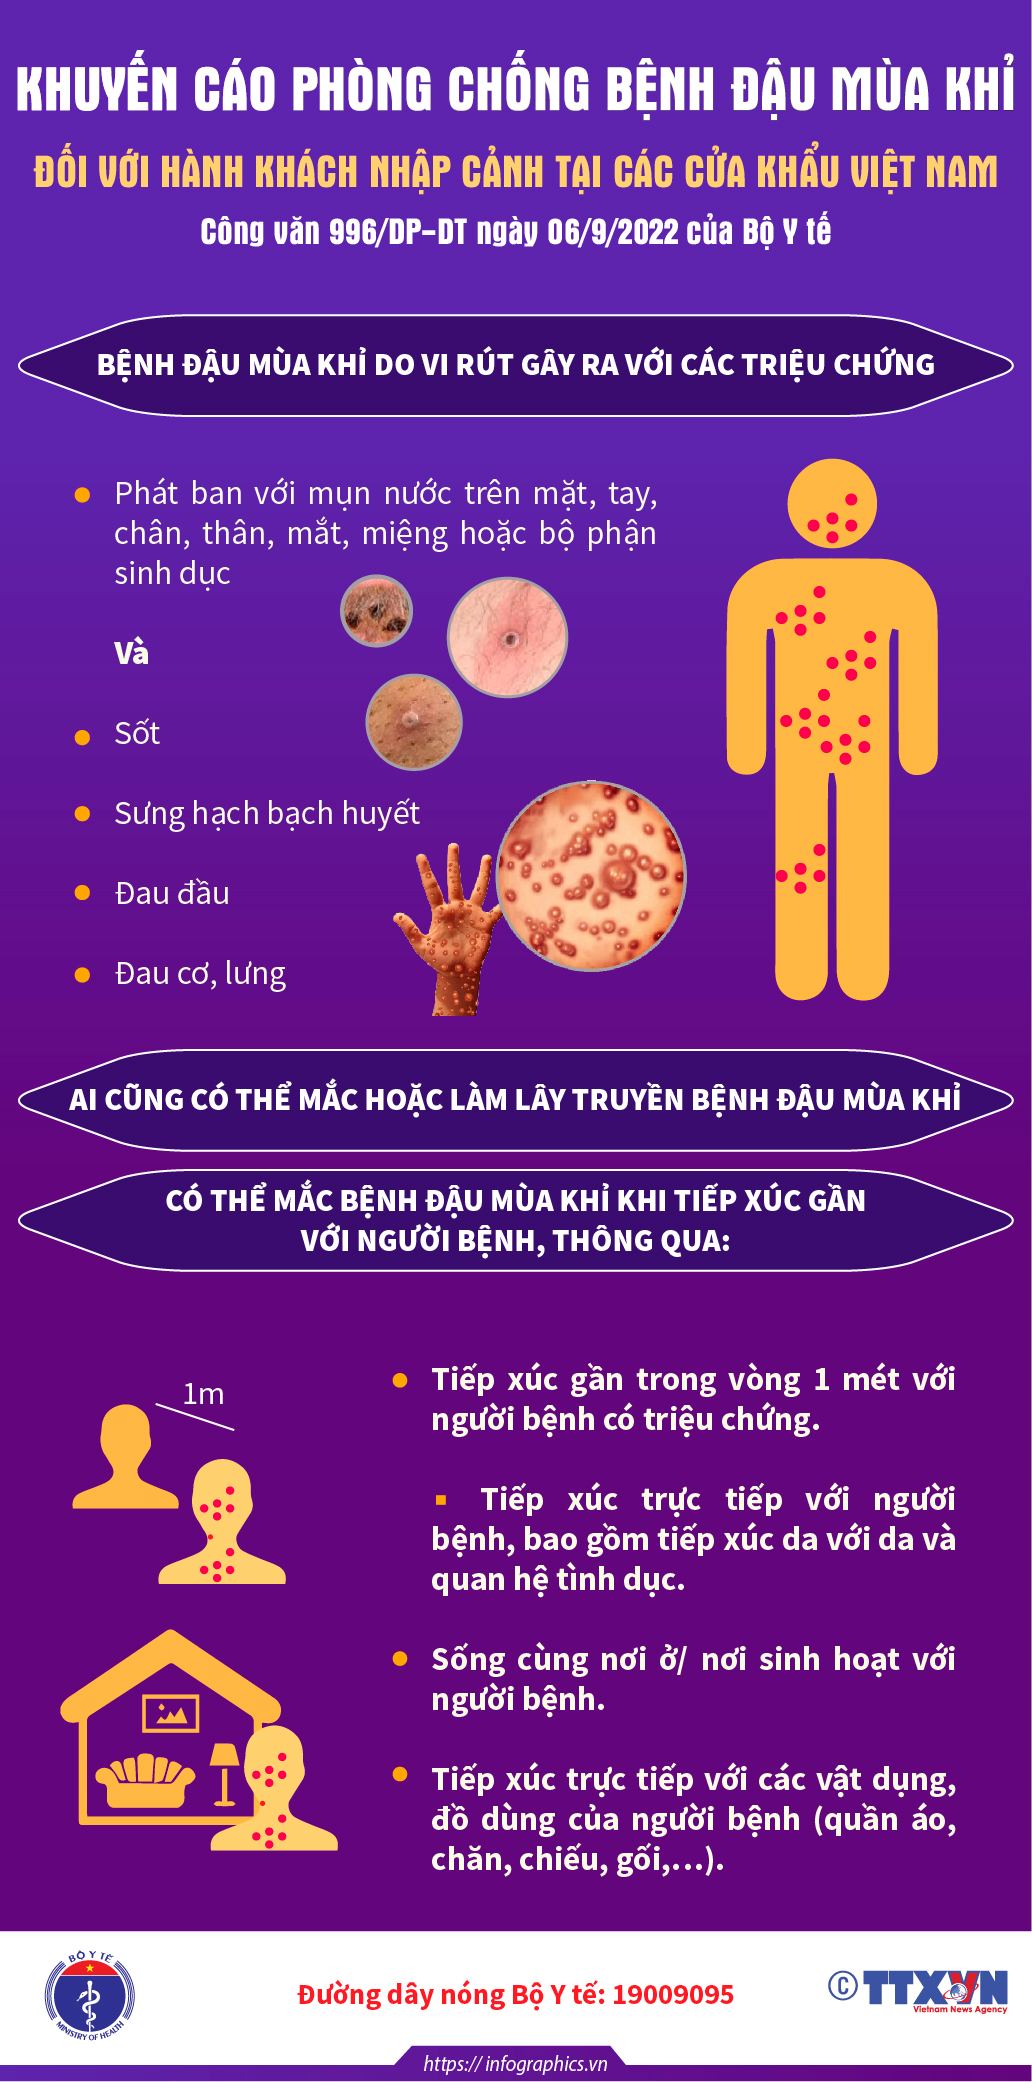 [Infographic] Khuyến cáo của Bộ Y tế phòng chống bệnh đậu mùa khỉ tại các cửa khẩu - Ảnh 3.